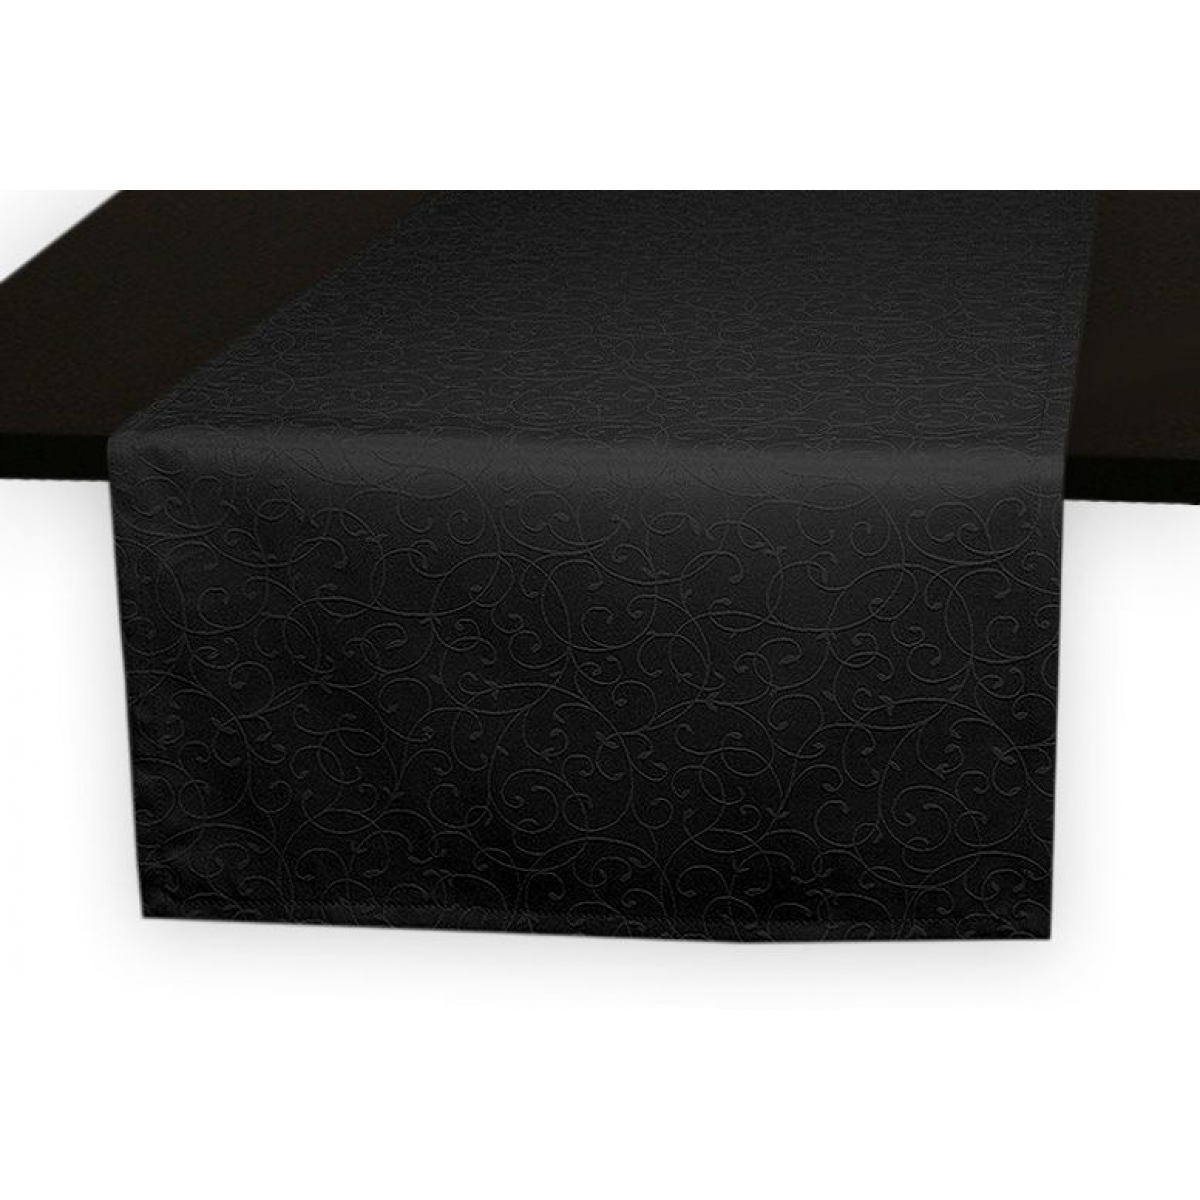 Дорожки на стол 120х45 см. ткань коллекции Ричард рисунок тонкий вензель 1812 цвет черный